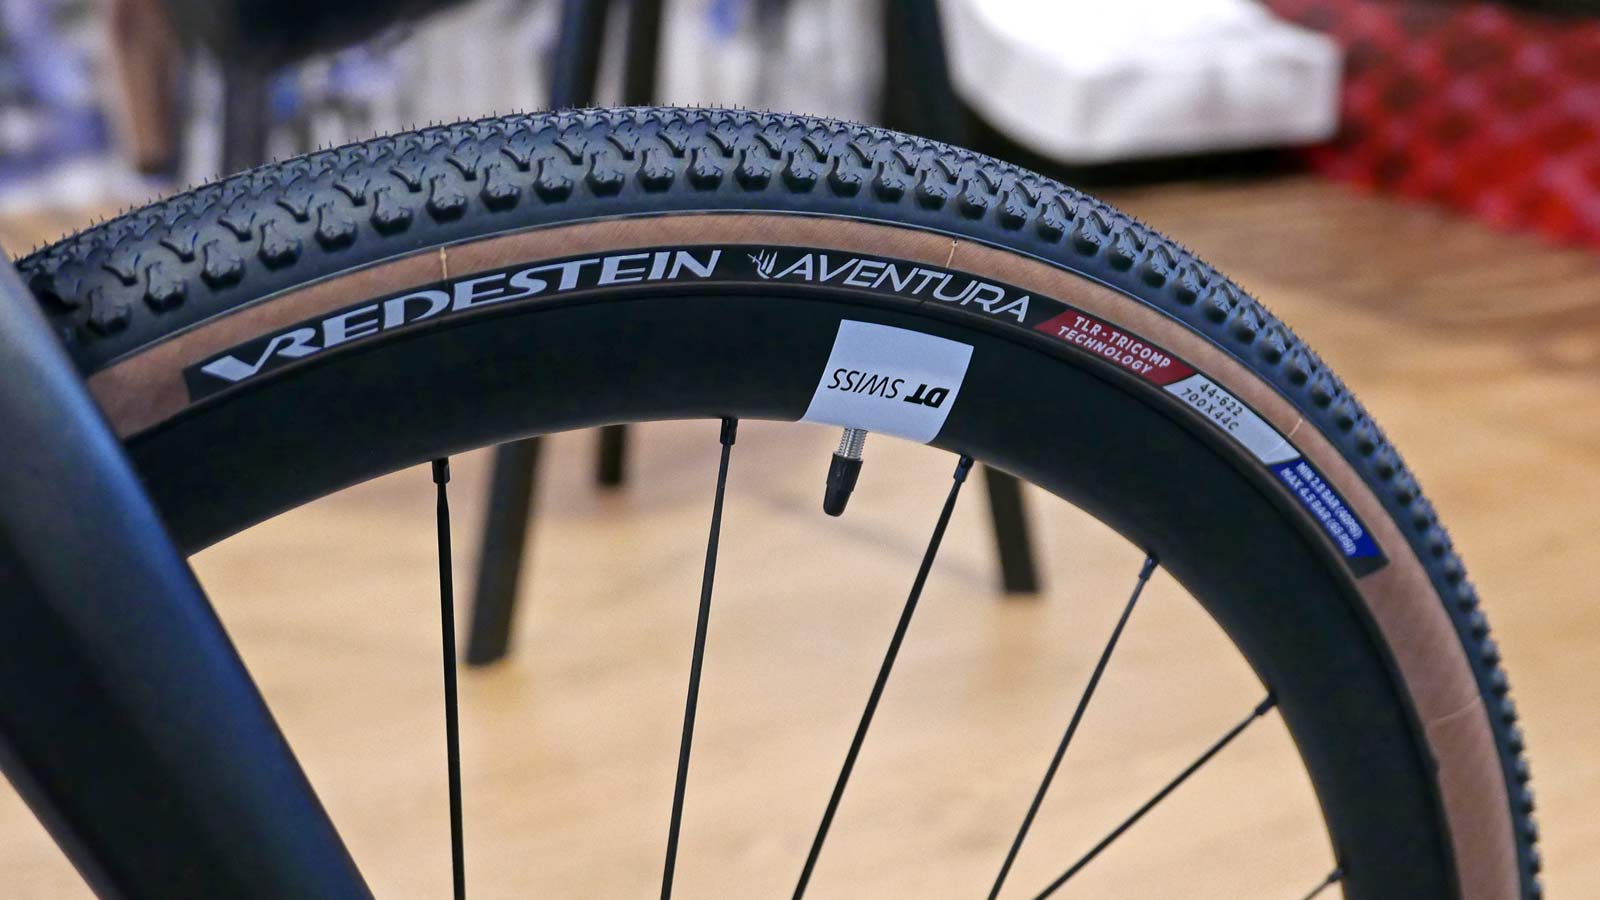 Vredestein Aventura gravel tire, fast-rolling 700c gravel bike tires